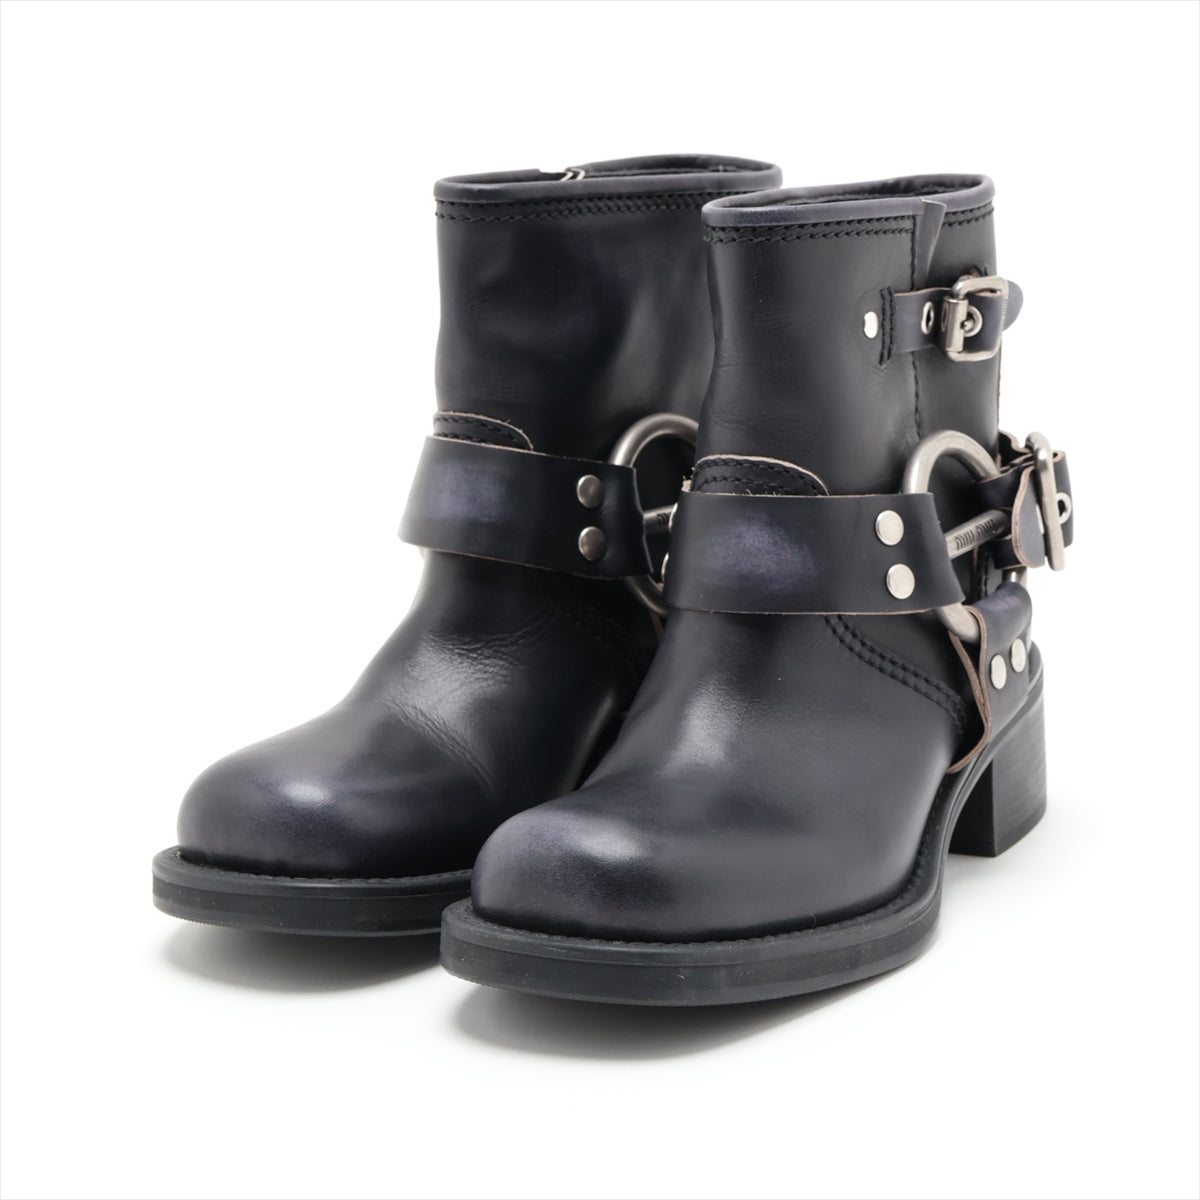 Miu Miu Leather Boots 35 Ladies' Black Buckle vintage look